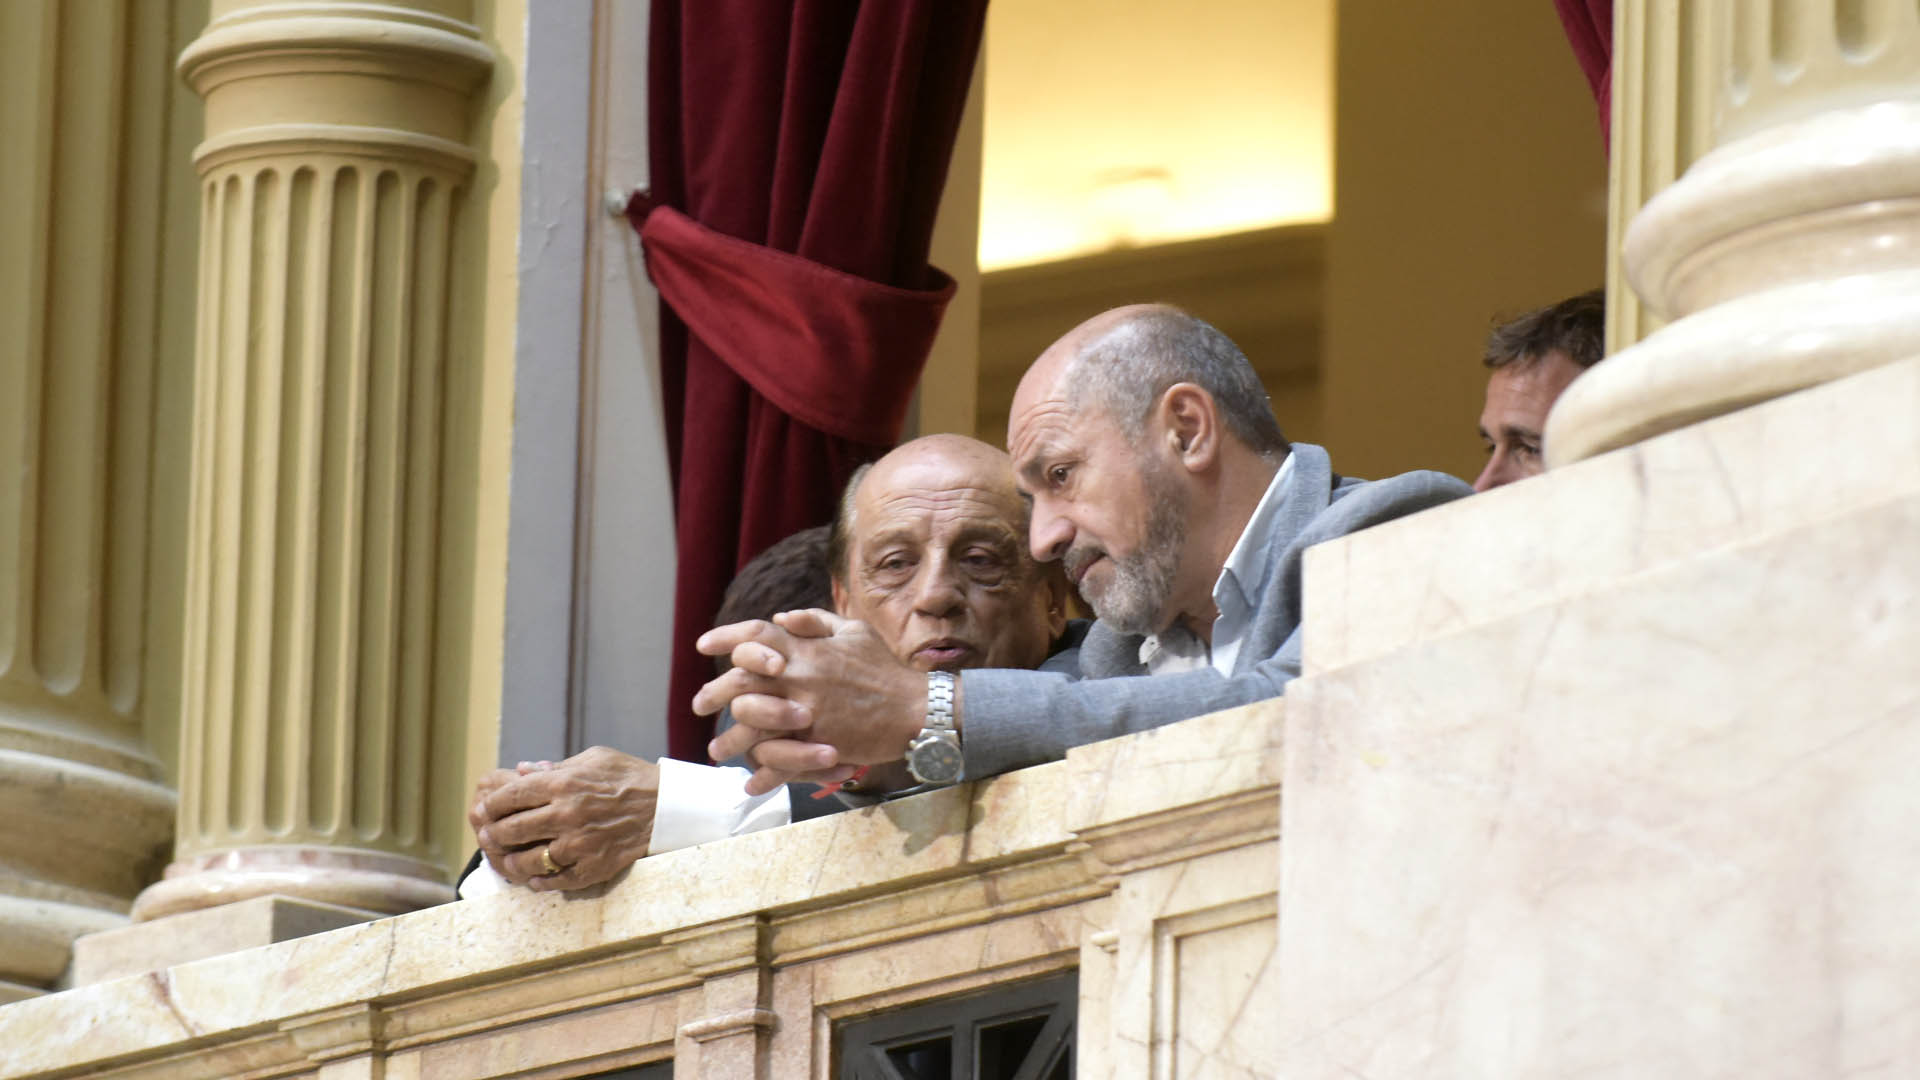 Mario Secco de Ensenada y Juan José Mussi de Berazategui presentes en uno de los palcos del Congreso 